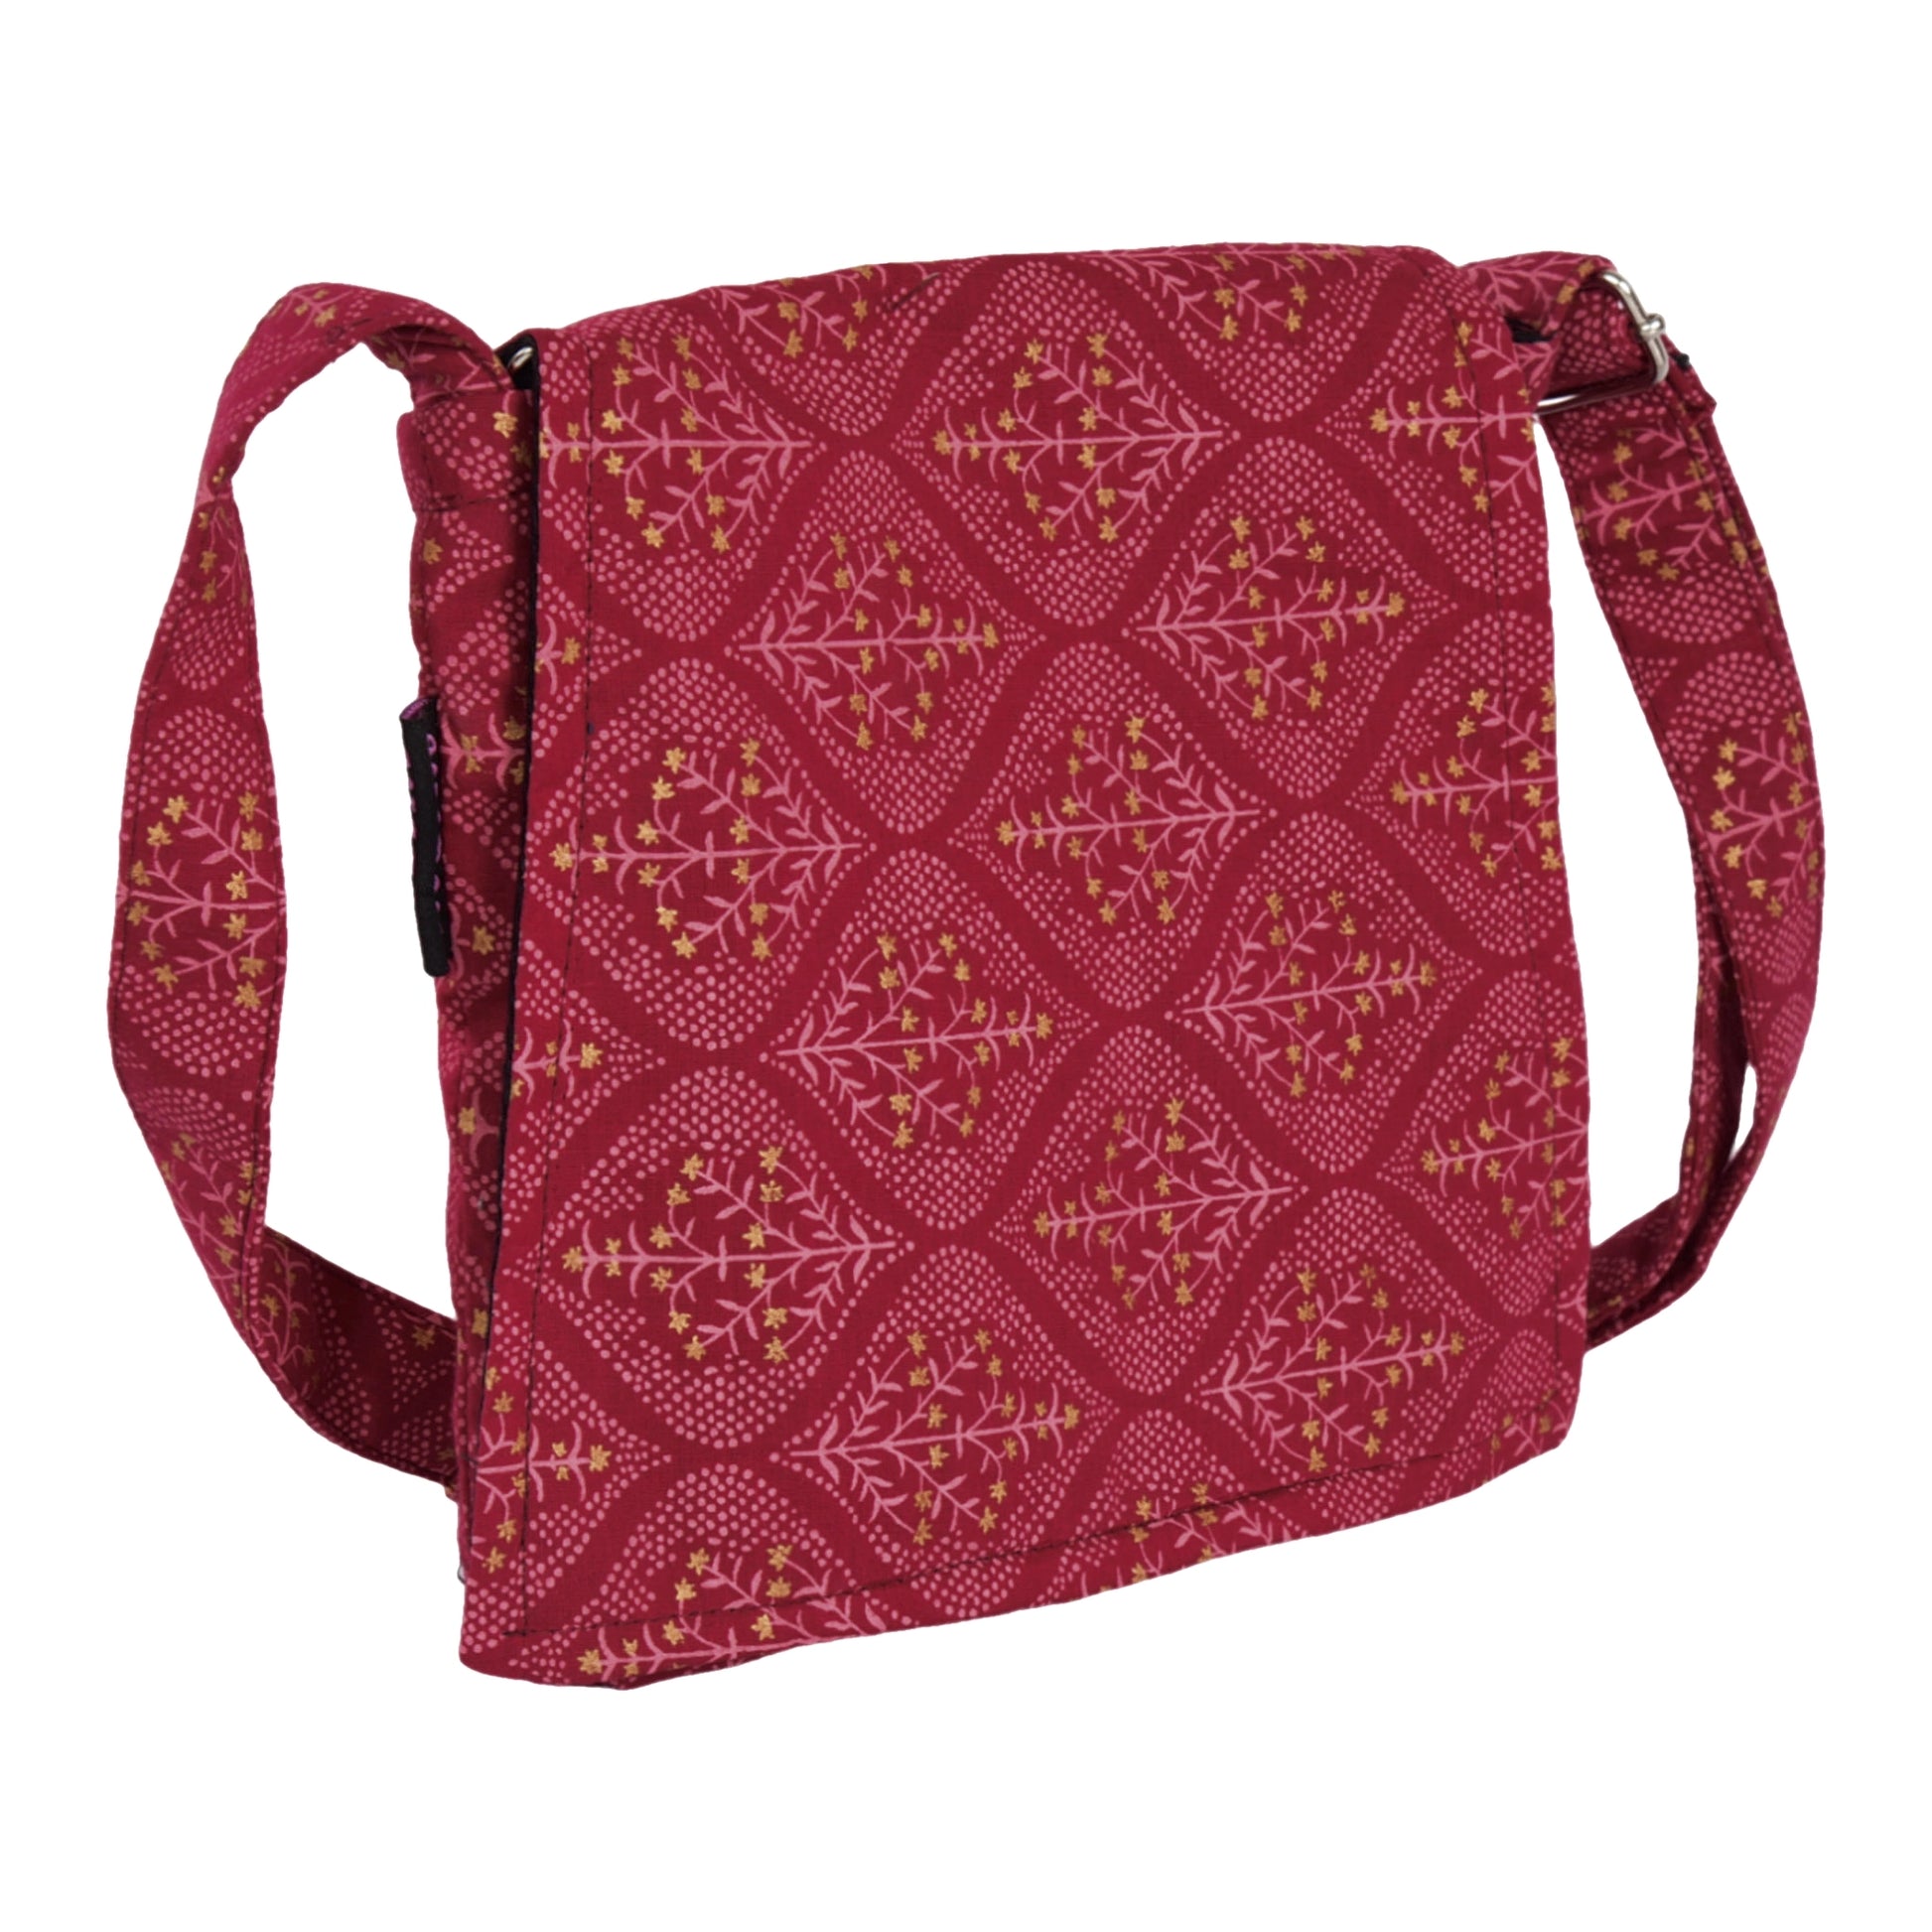 Kleine Tasche, Umhängetasche aus Baumwolle, rot mit gepunkteten Mustern und Sternensträucher. Ein Hauptfach mit Einsteckfach und jeweils ein Reißverschlussfach vorne und hinten.